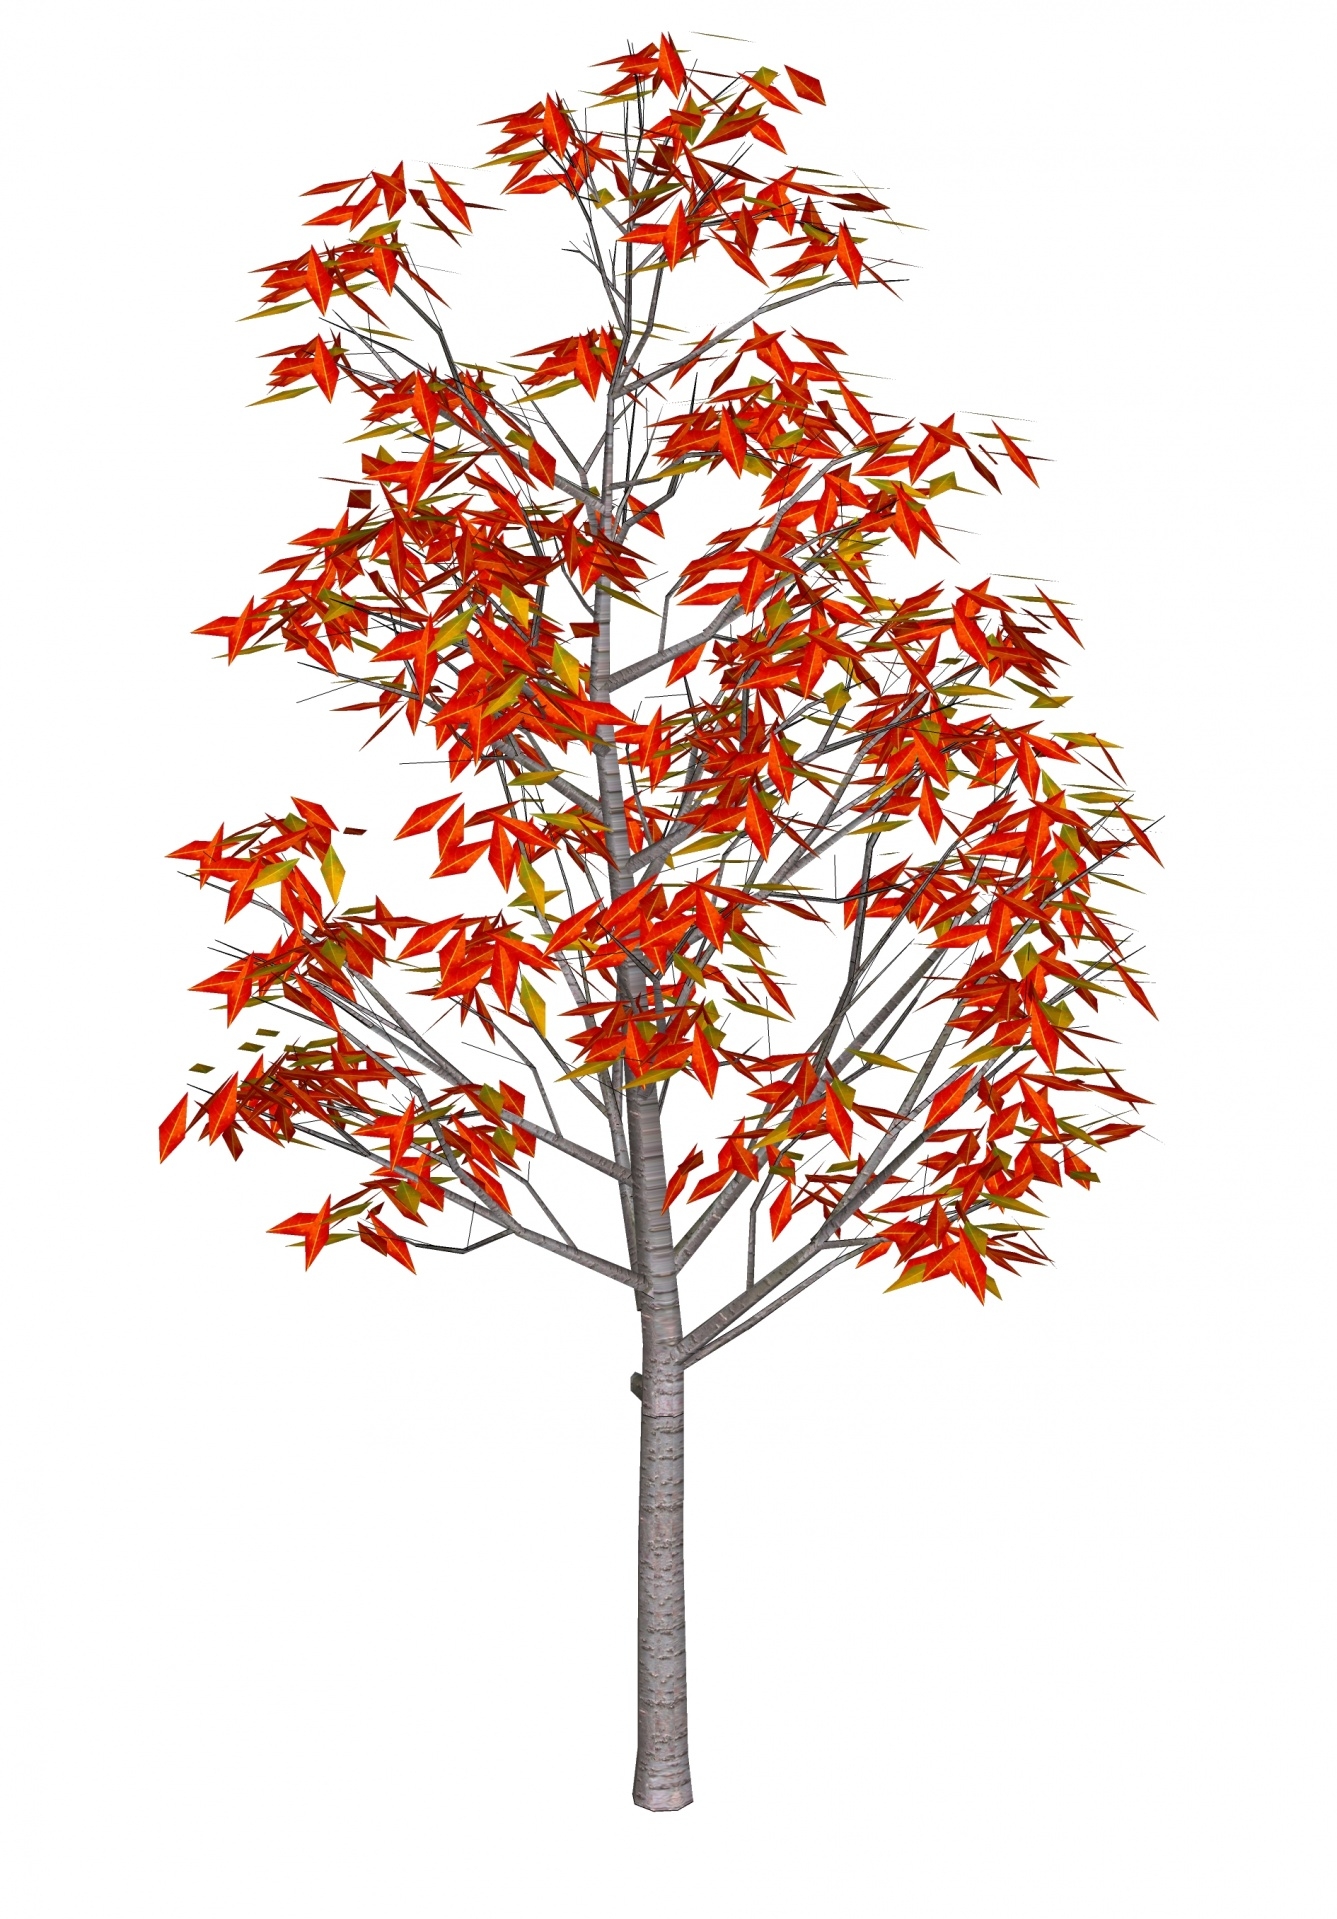 Рябина: дерево, листья, плоды рябины